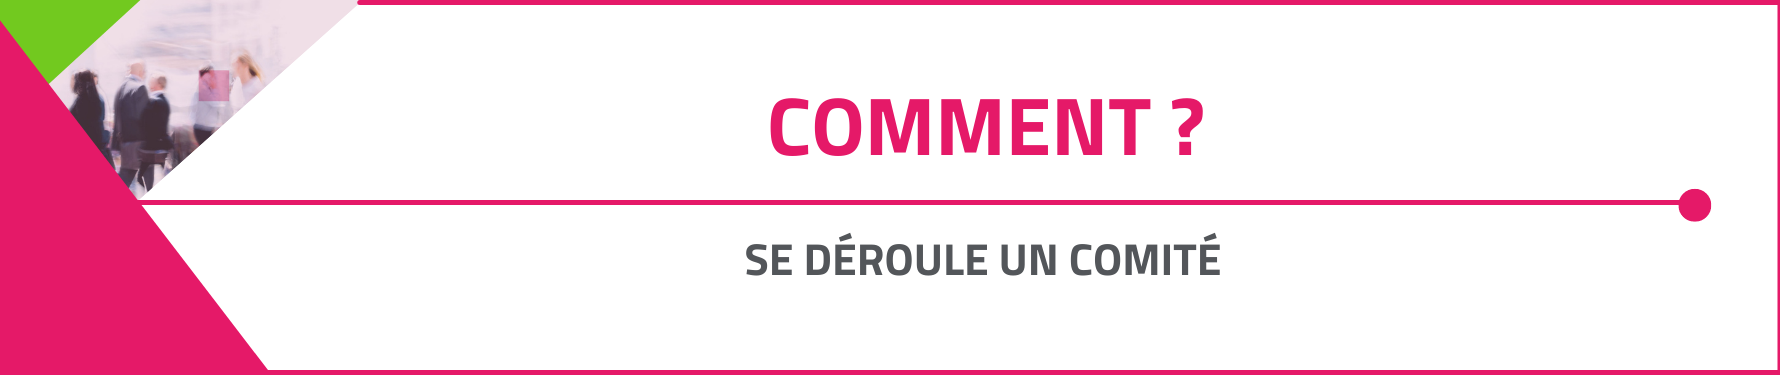 Comment_se_deroule_un_comite.png